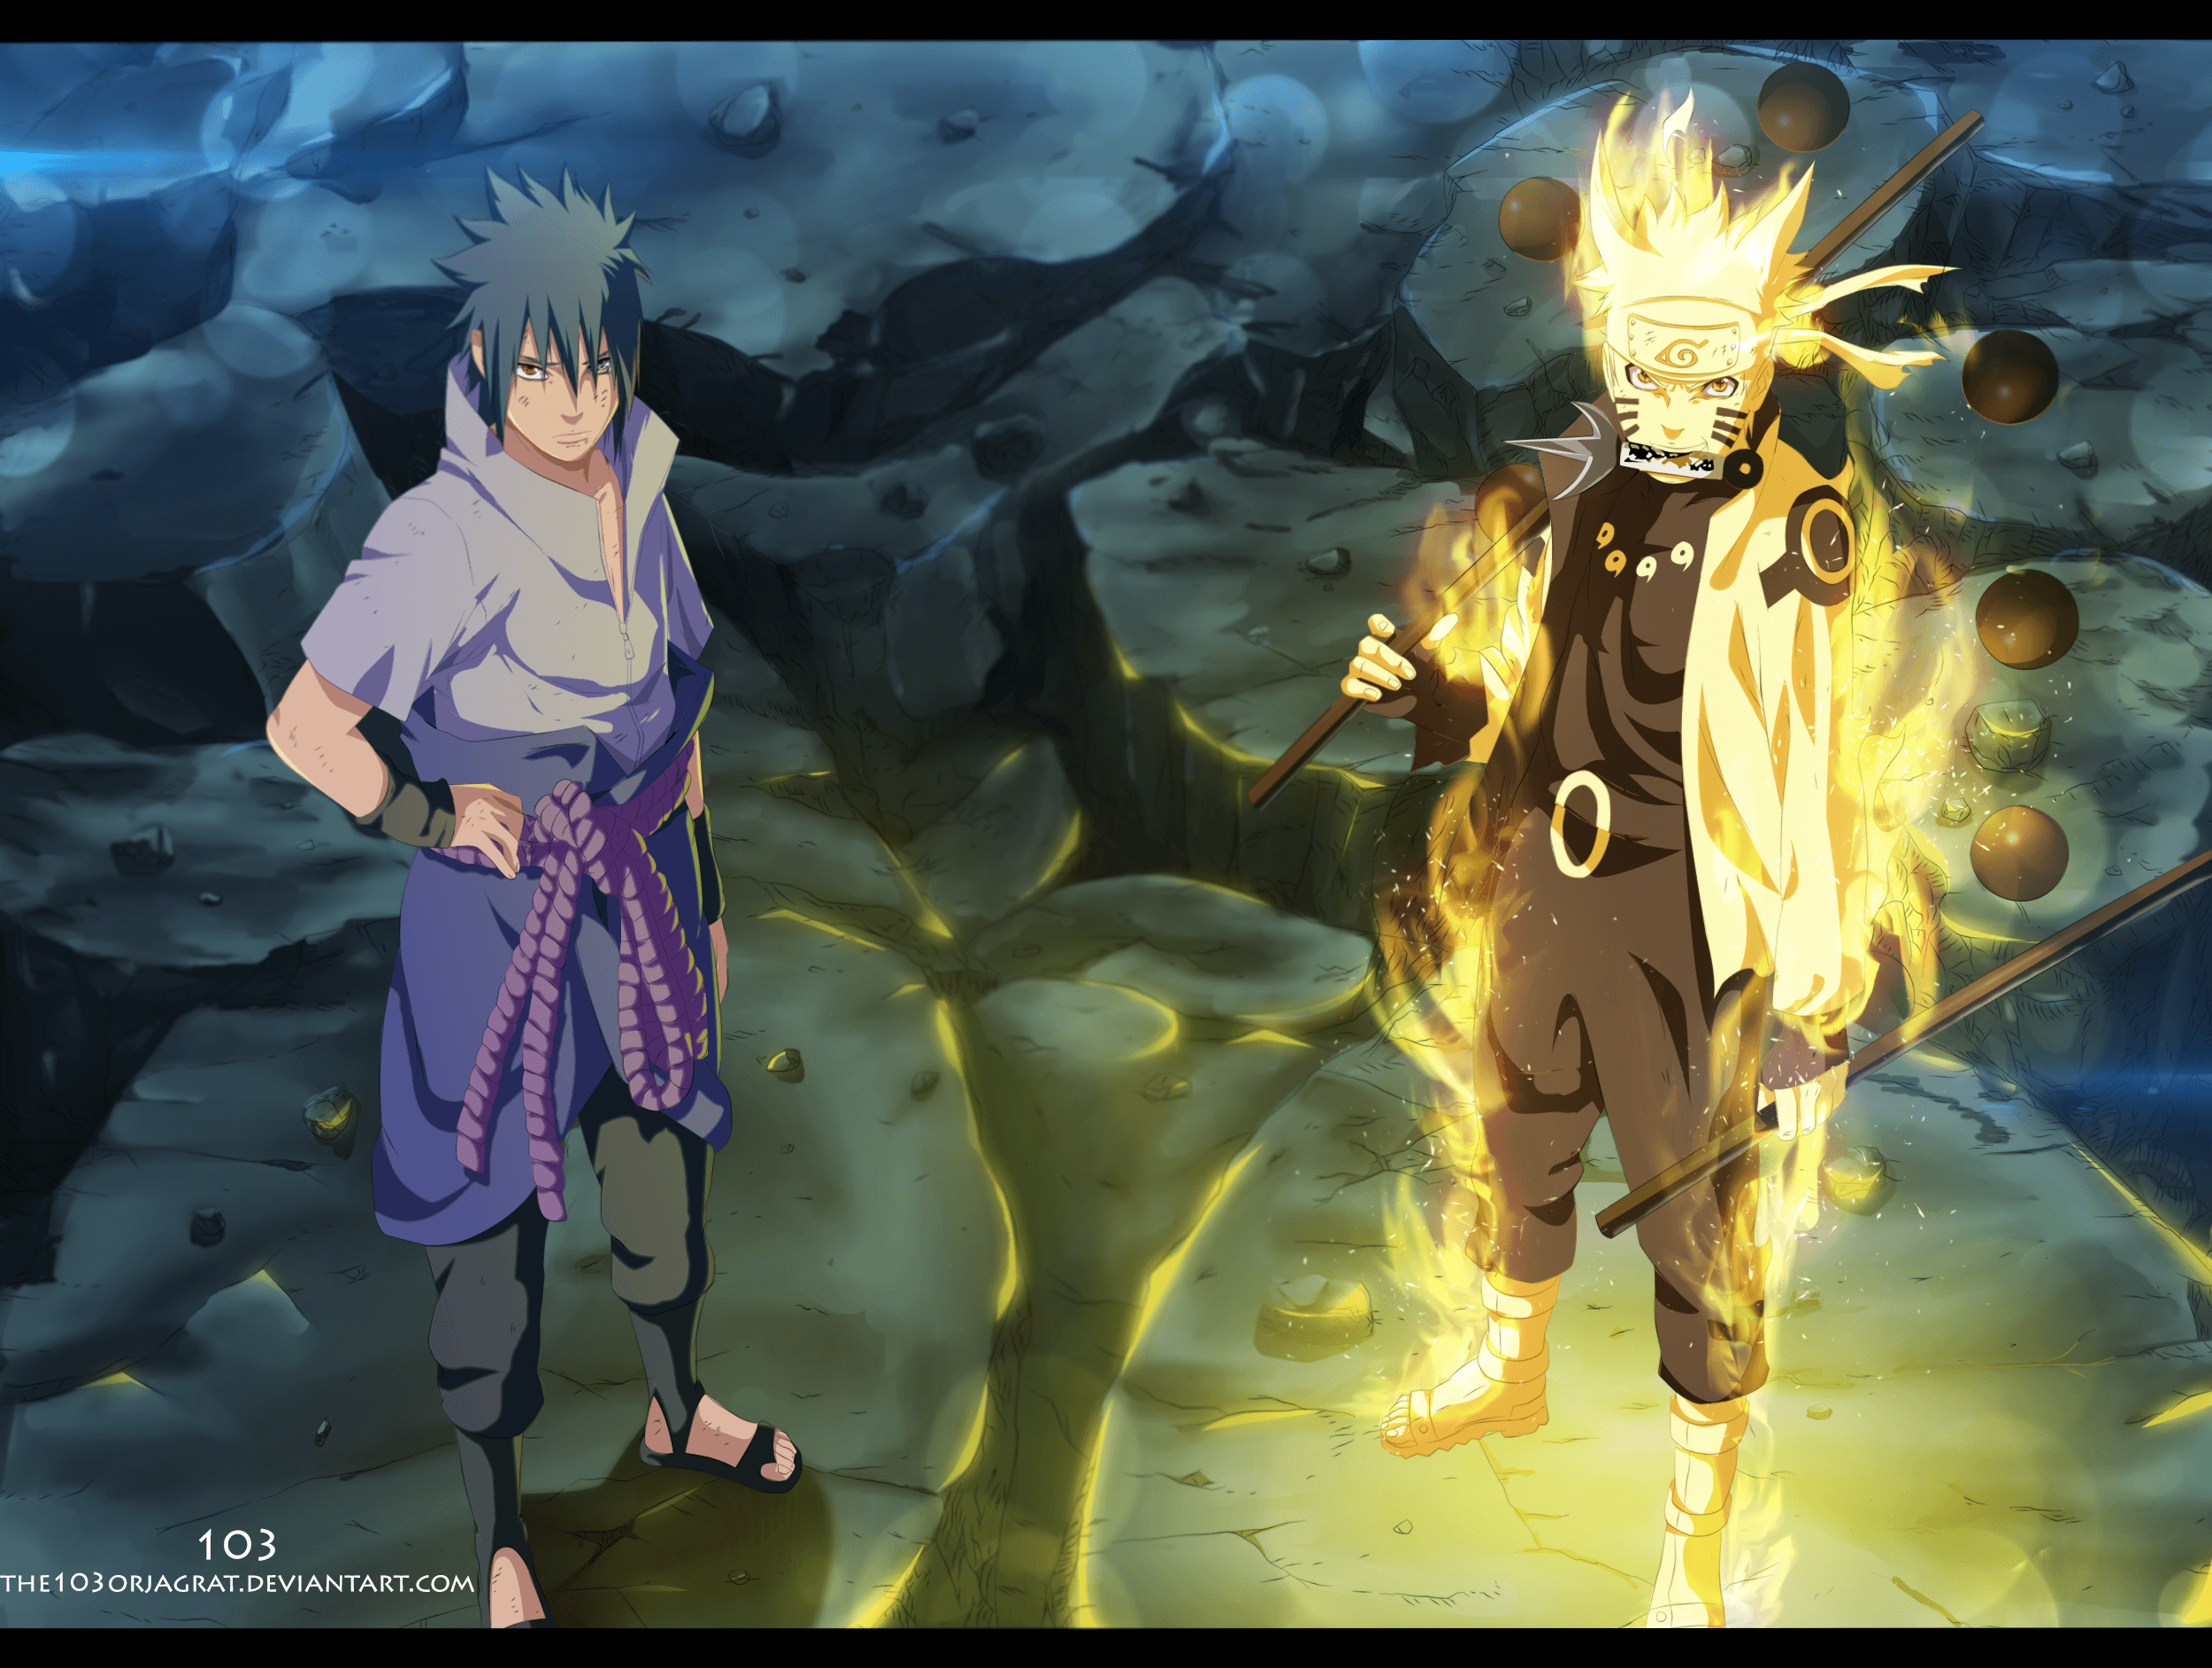 Goku & Vegeta (Saiyan Saga) VS Naruto & Sasuke